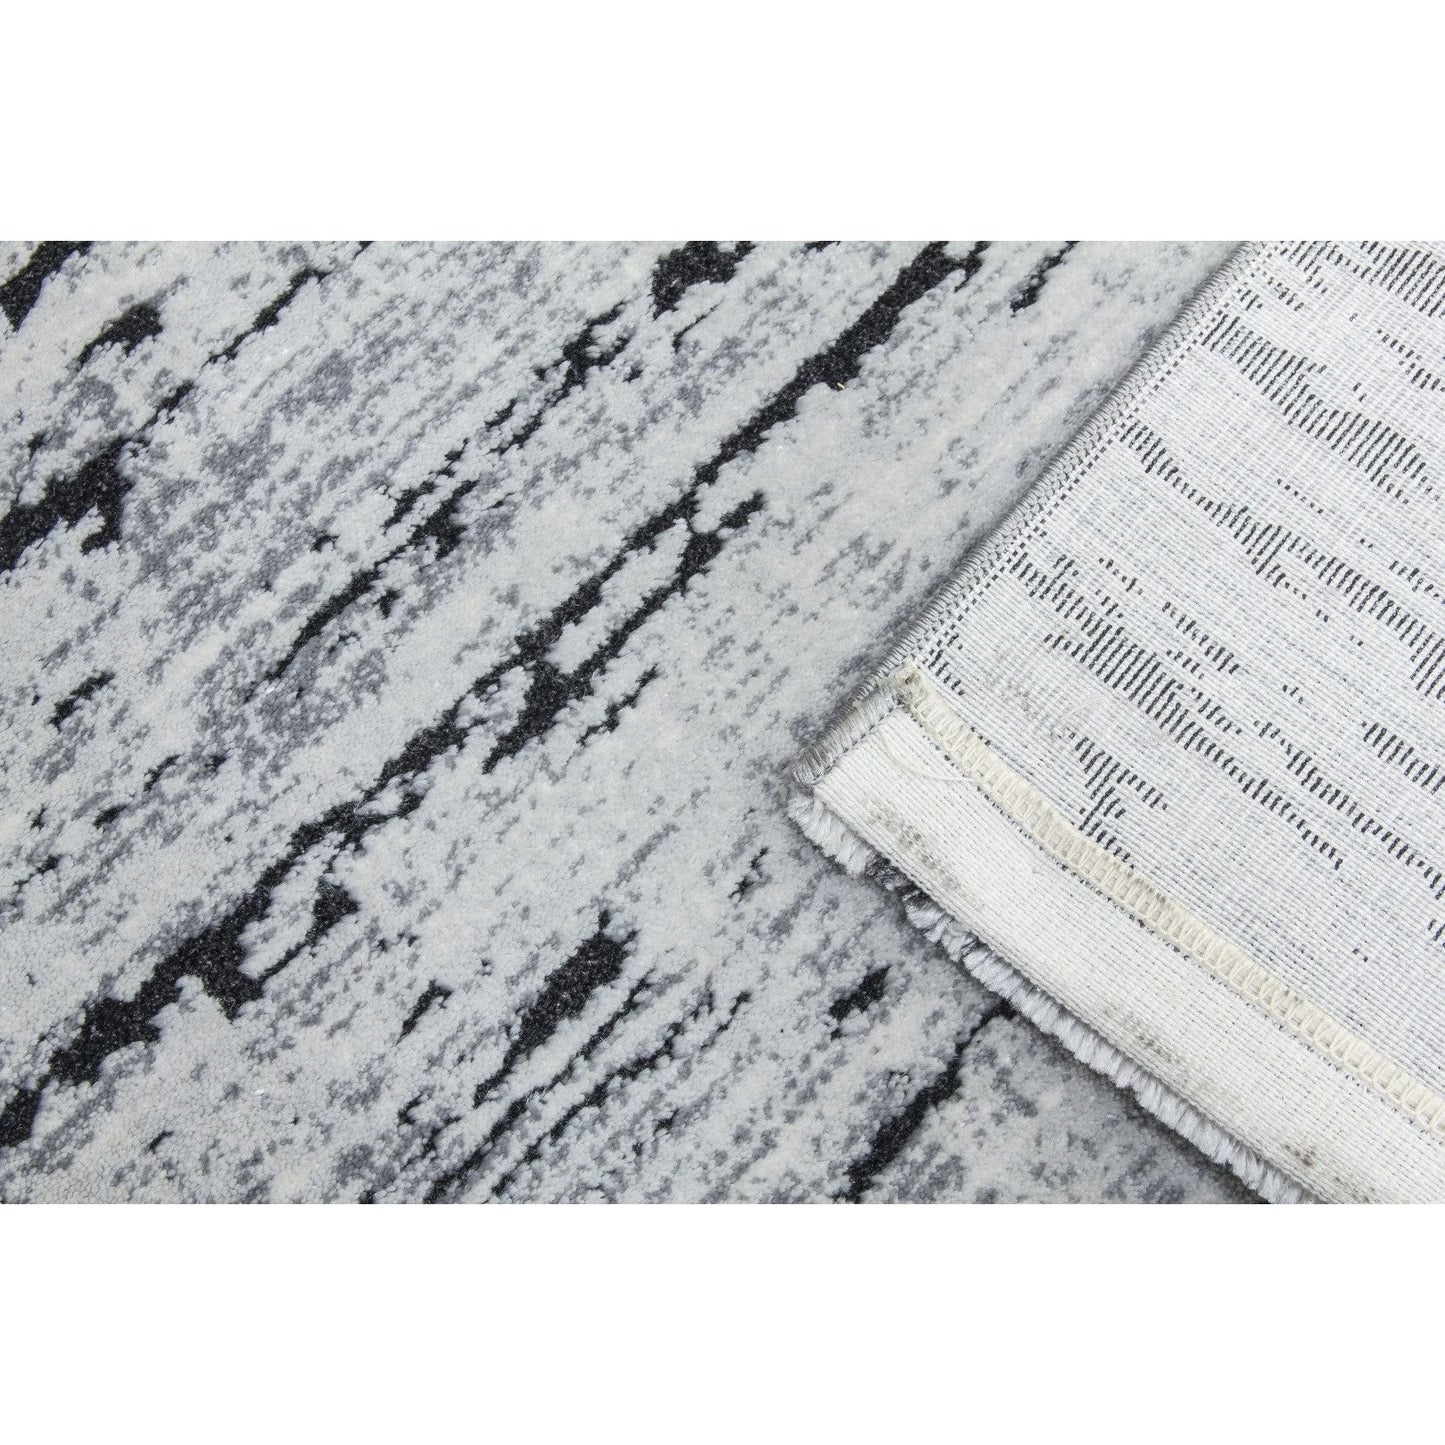 Grey Black Abstract Rug - Rococo Crevassi